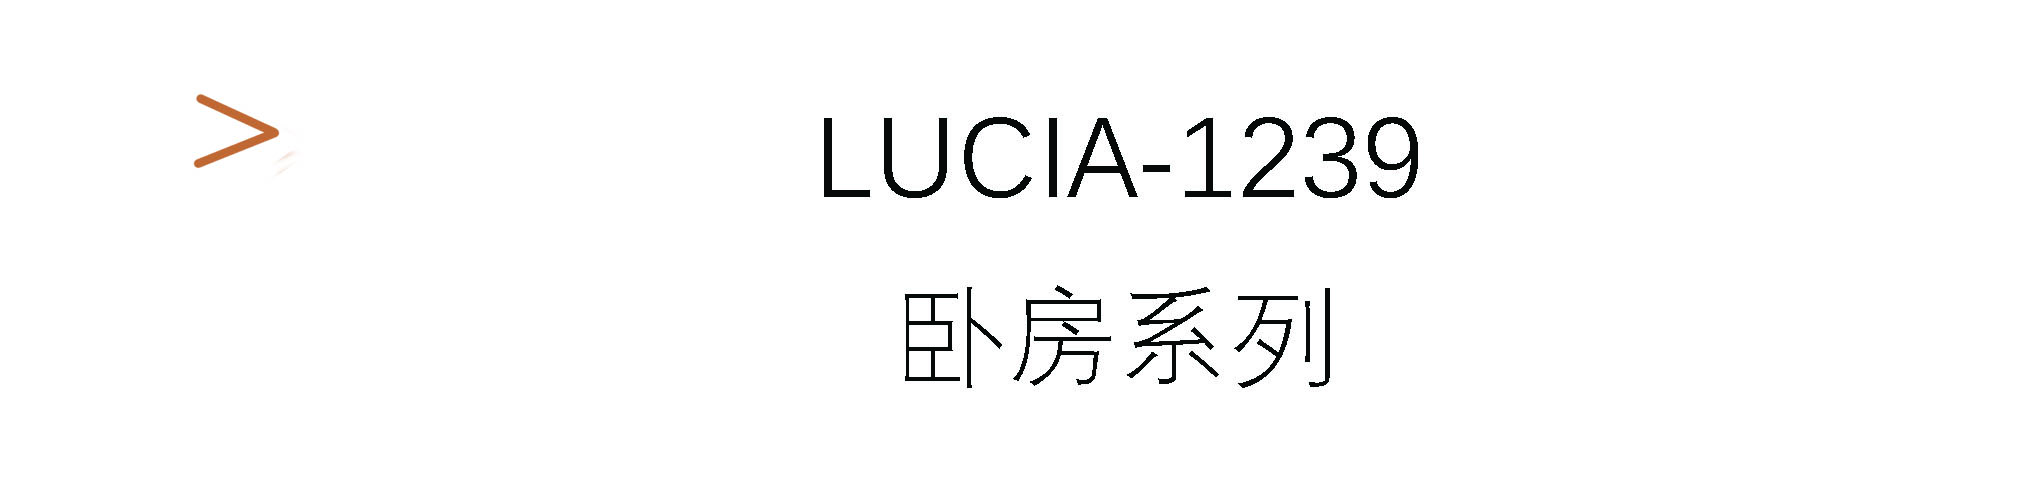 Lucia-1239